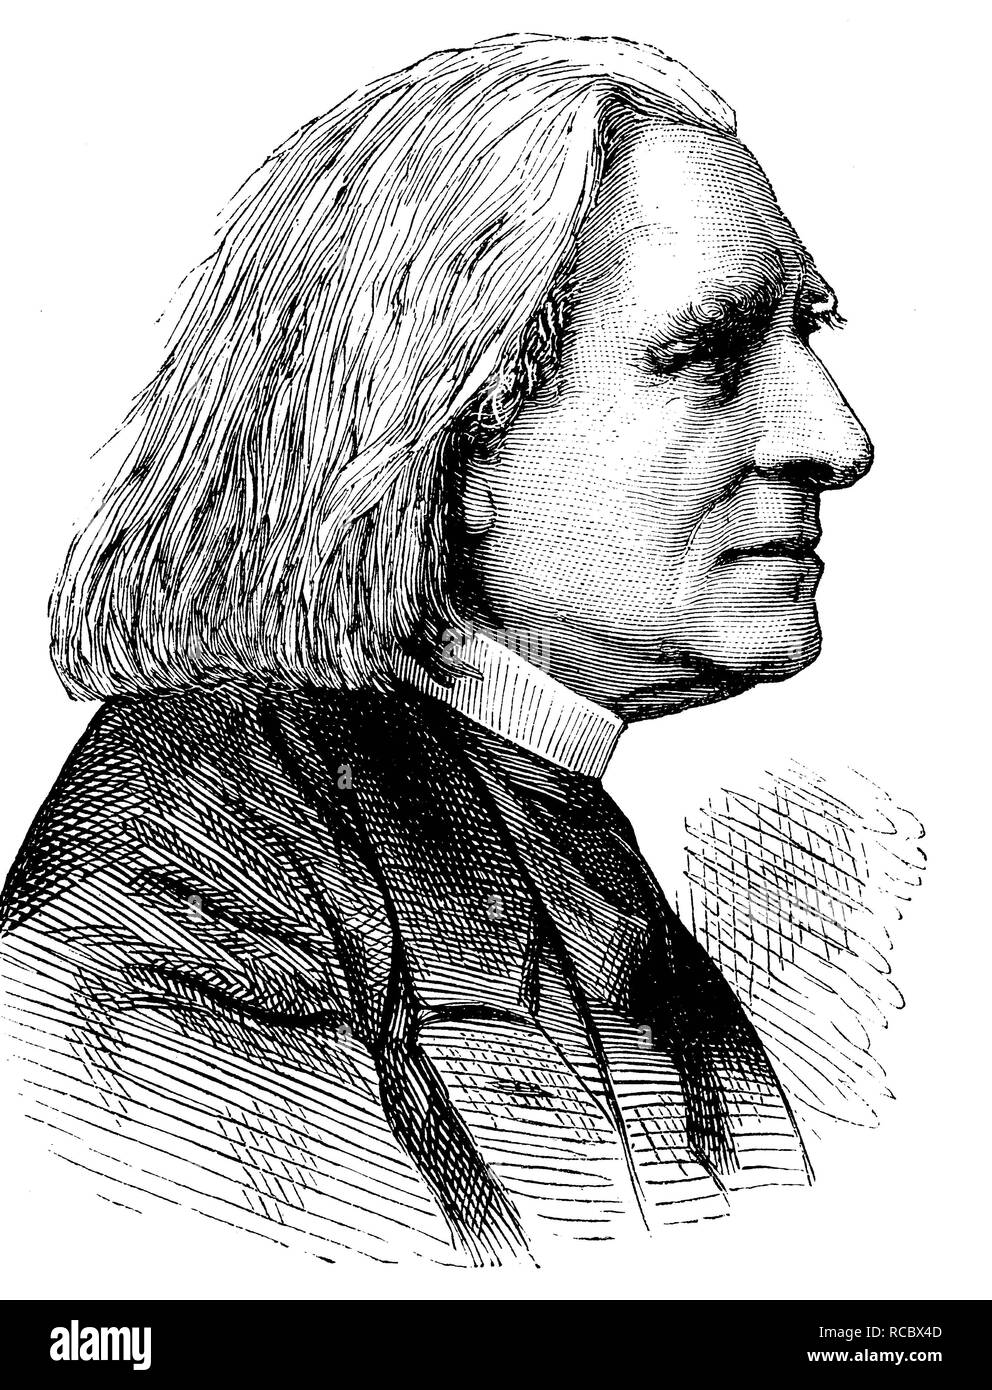 Franz Liszt, 1811-1886, compositeur, pianiste, chef d'orchestre, directeur de théâtre, professeur de musique et écrivain, portrait, gravure historique Banque D'Images